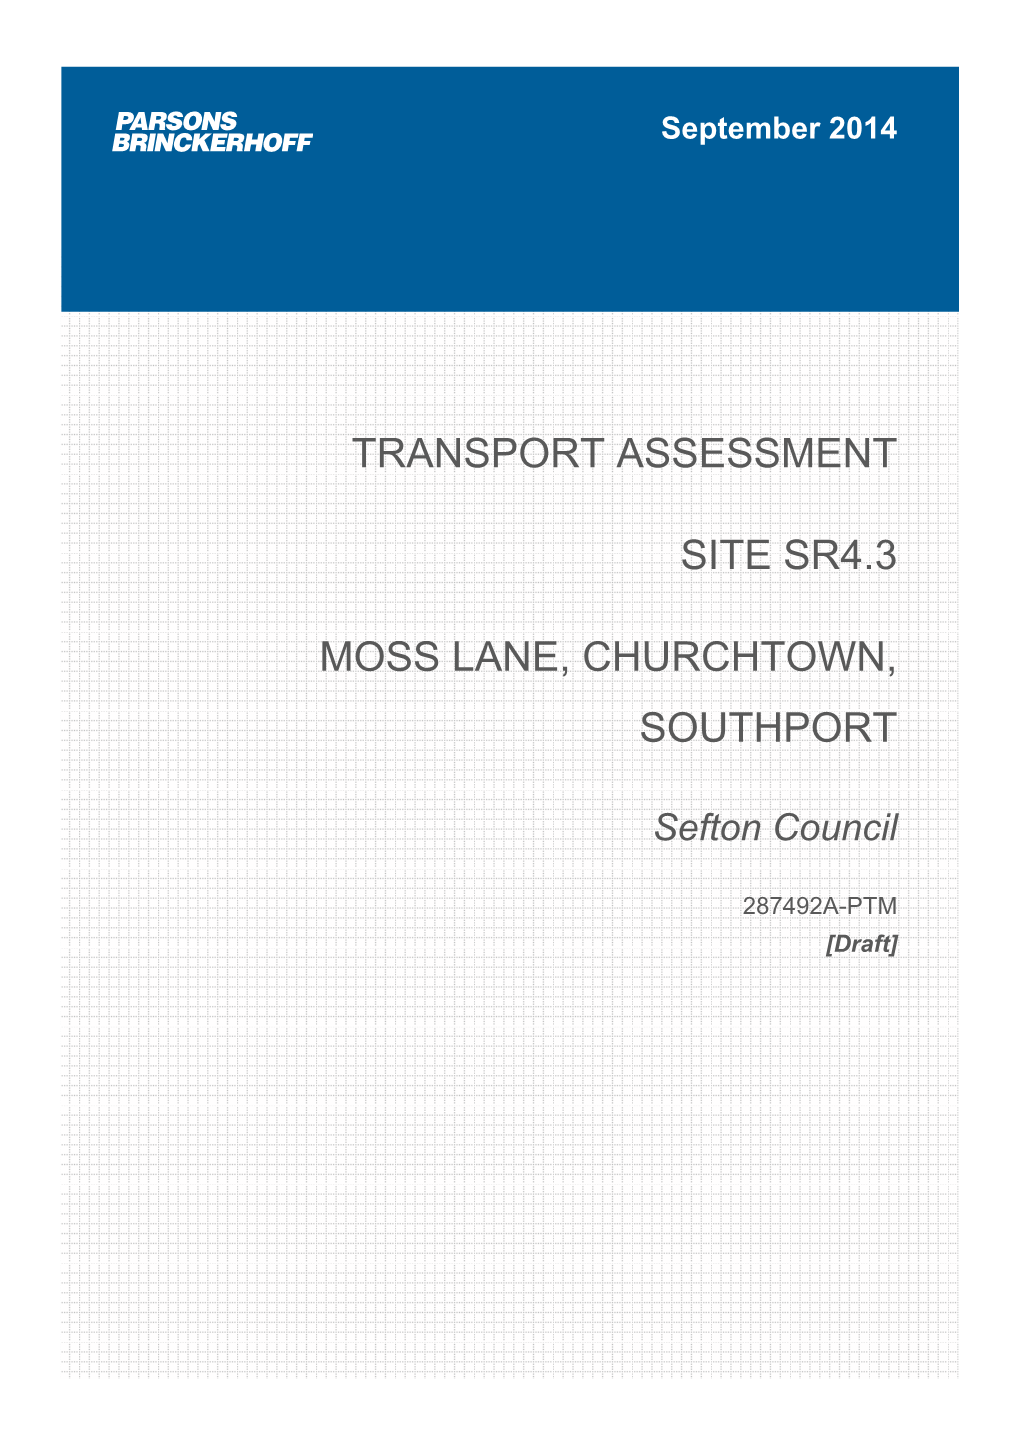 Transport Assessment Site Sr4.3 Moss Lane